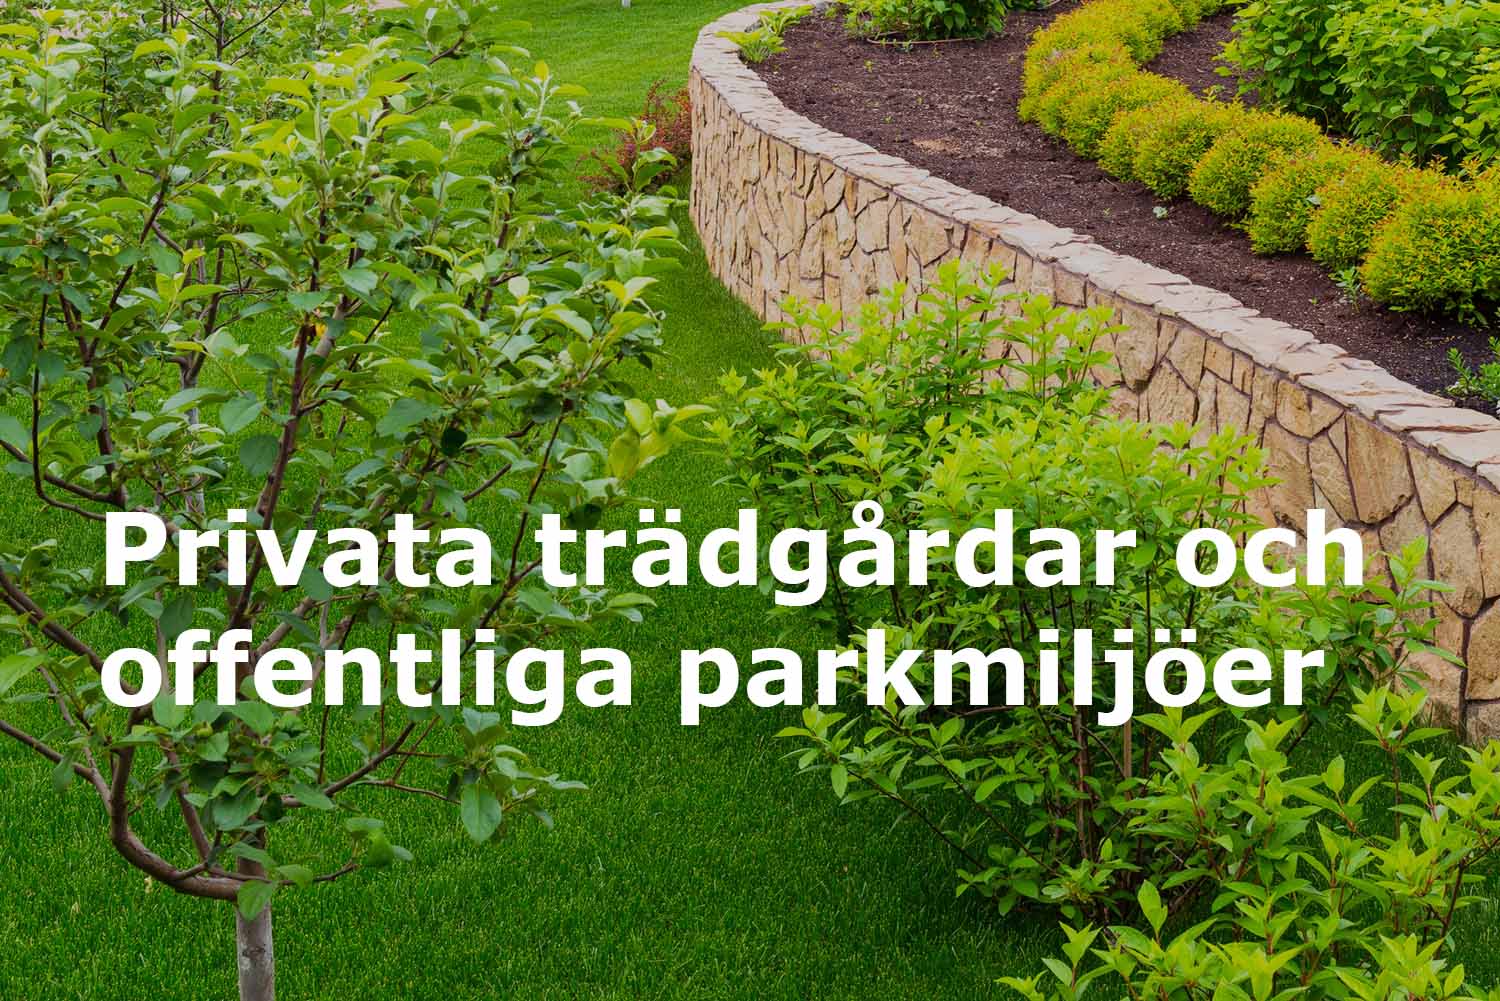 Runemyrs Alltjänst AB sköter privata trädgårdar och offentliga parkmiljöer